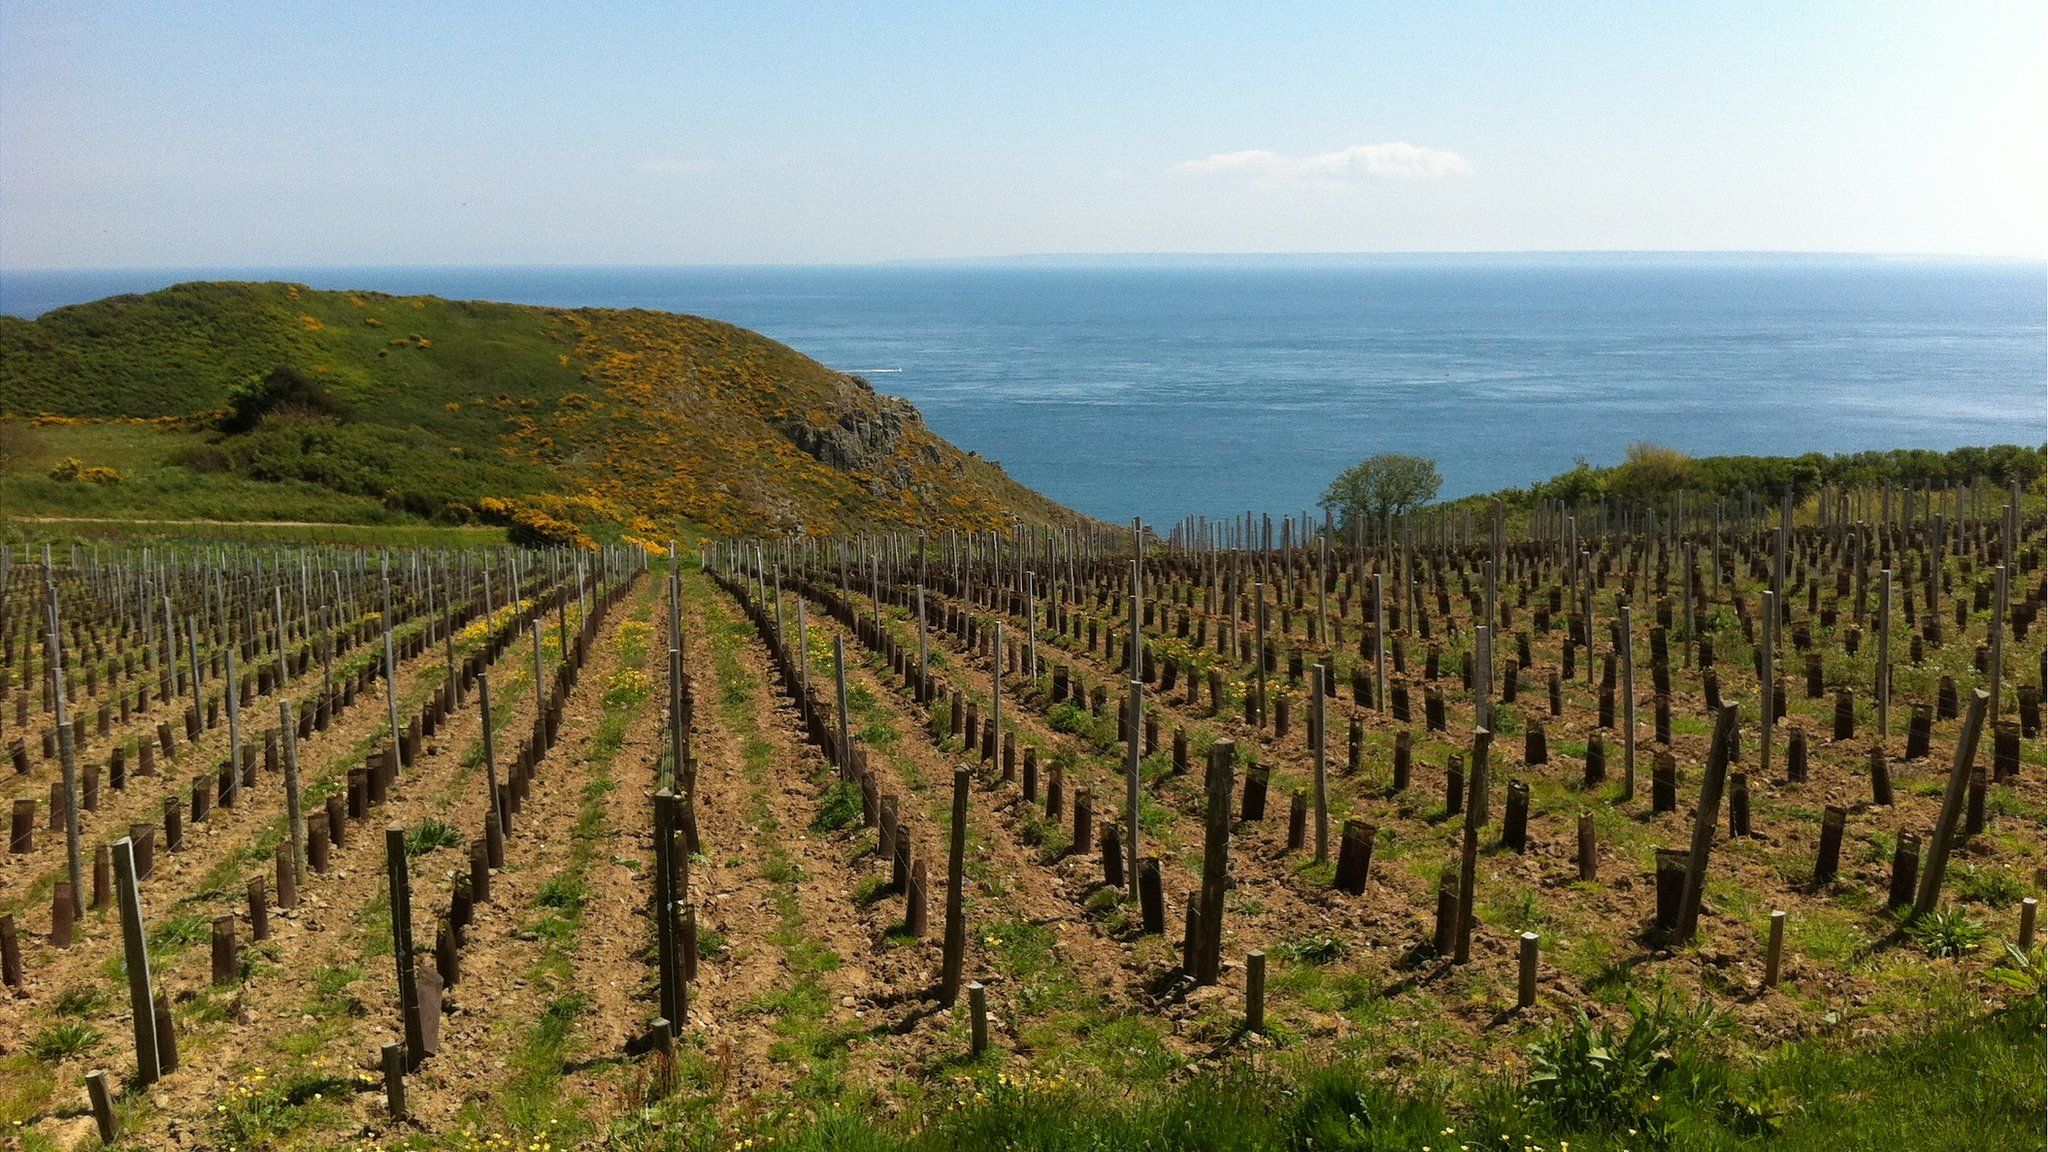 Sark vineyard